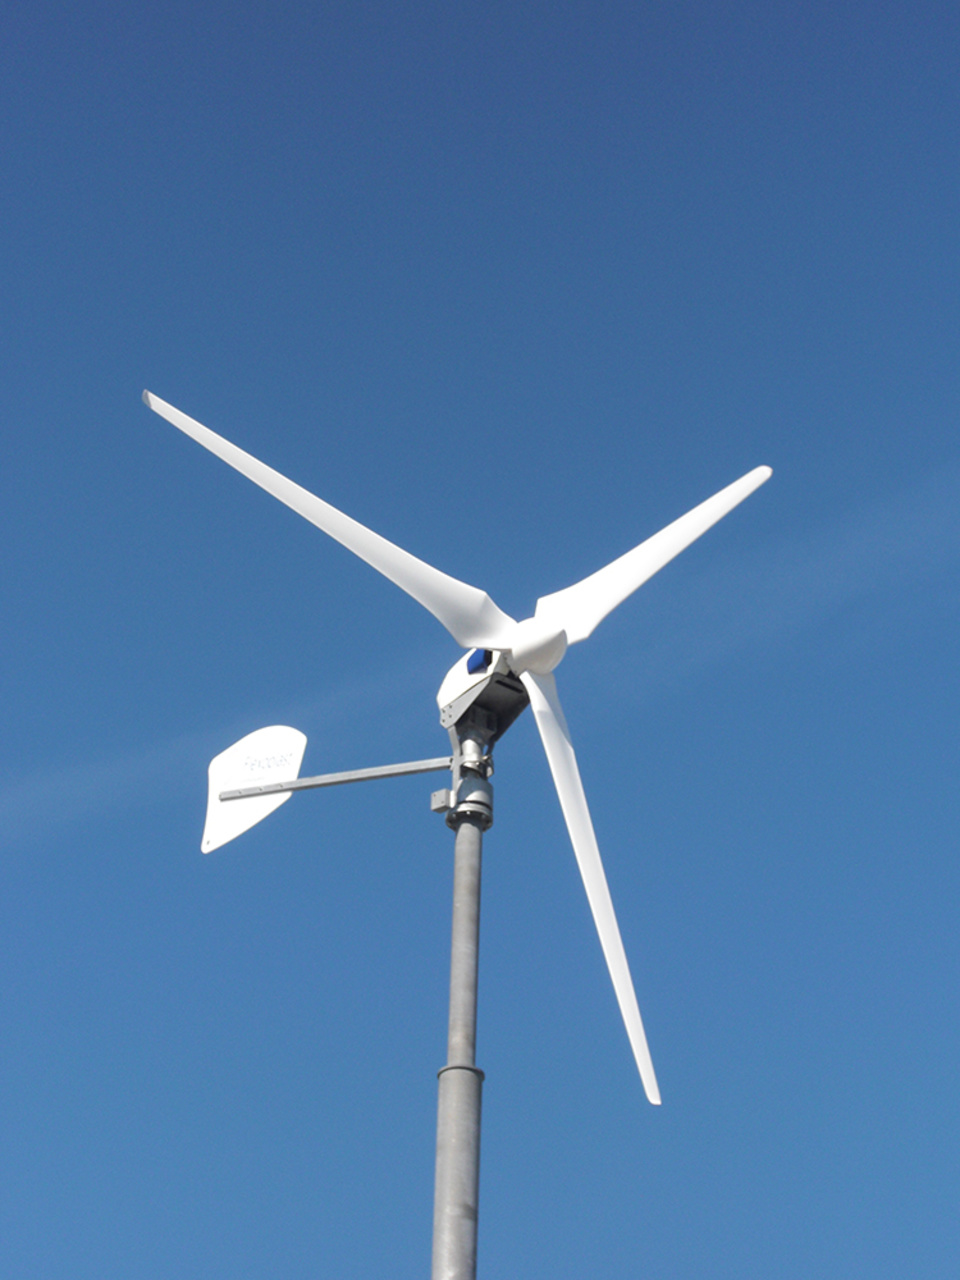 Windkraft2 bei Proplan - PLANUNGSBÜRO FÜR ELEKTROTECHNIK UND PHOTOVOLTAIK in Kitzingen